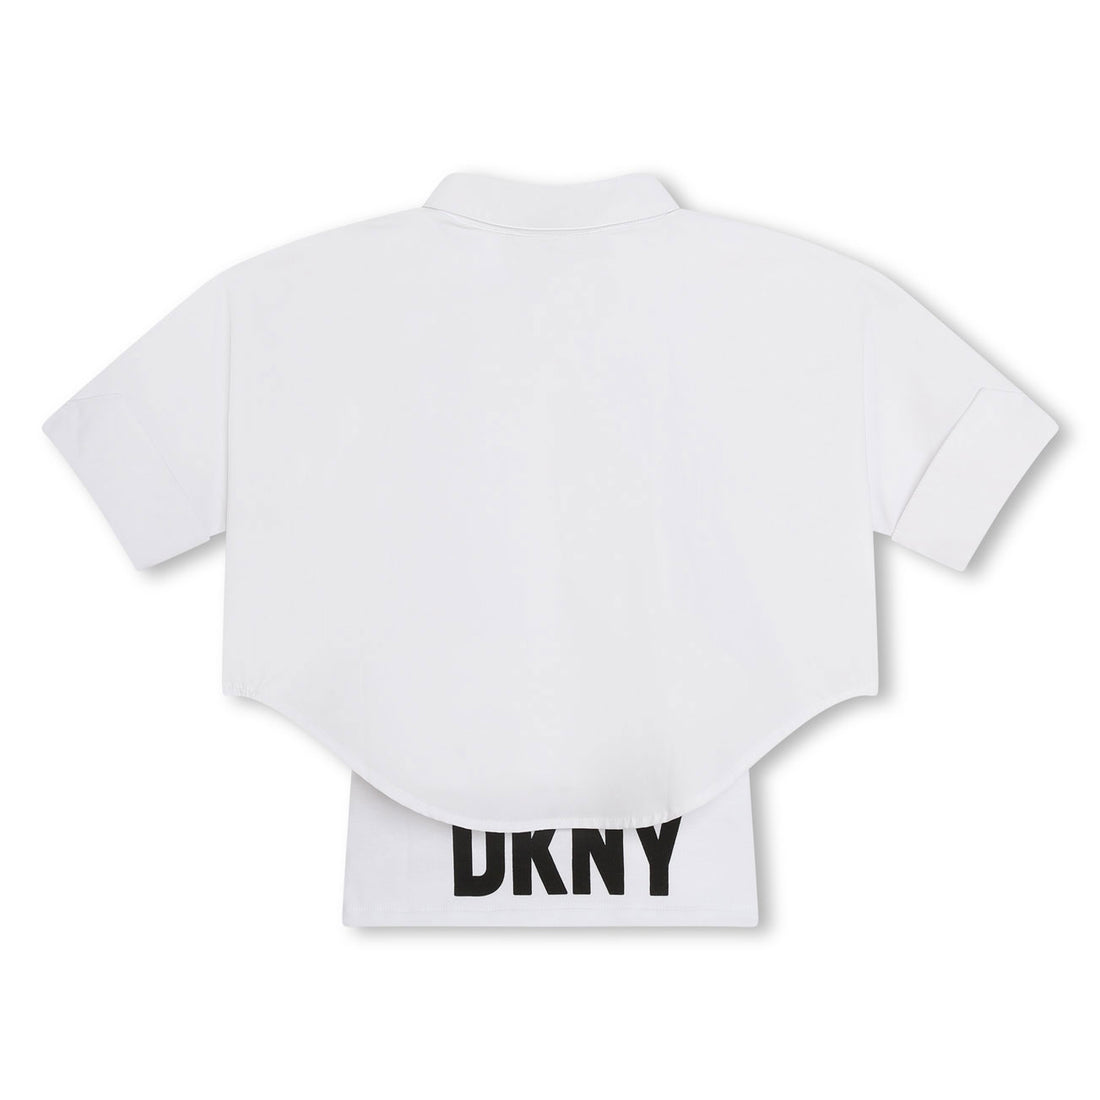 DKNY White Oversized Shirt With Undershirt